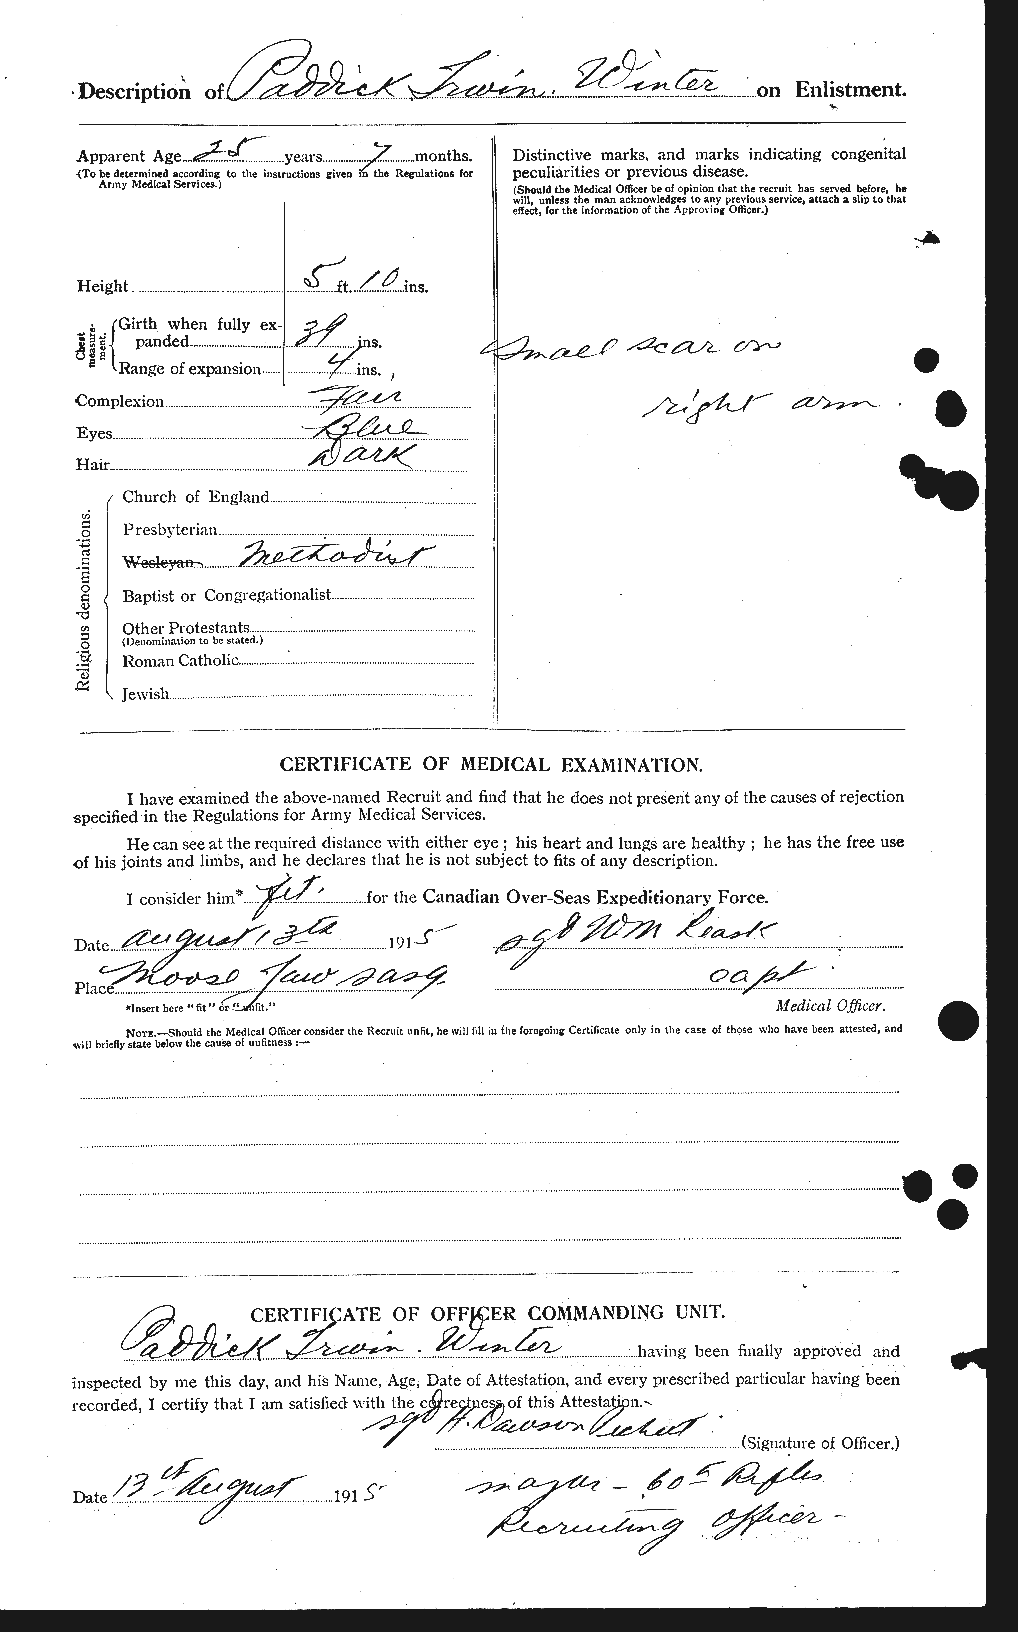 Dossiers du Personnel de la Première Guerre mondiale - CEC 685765b